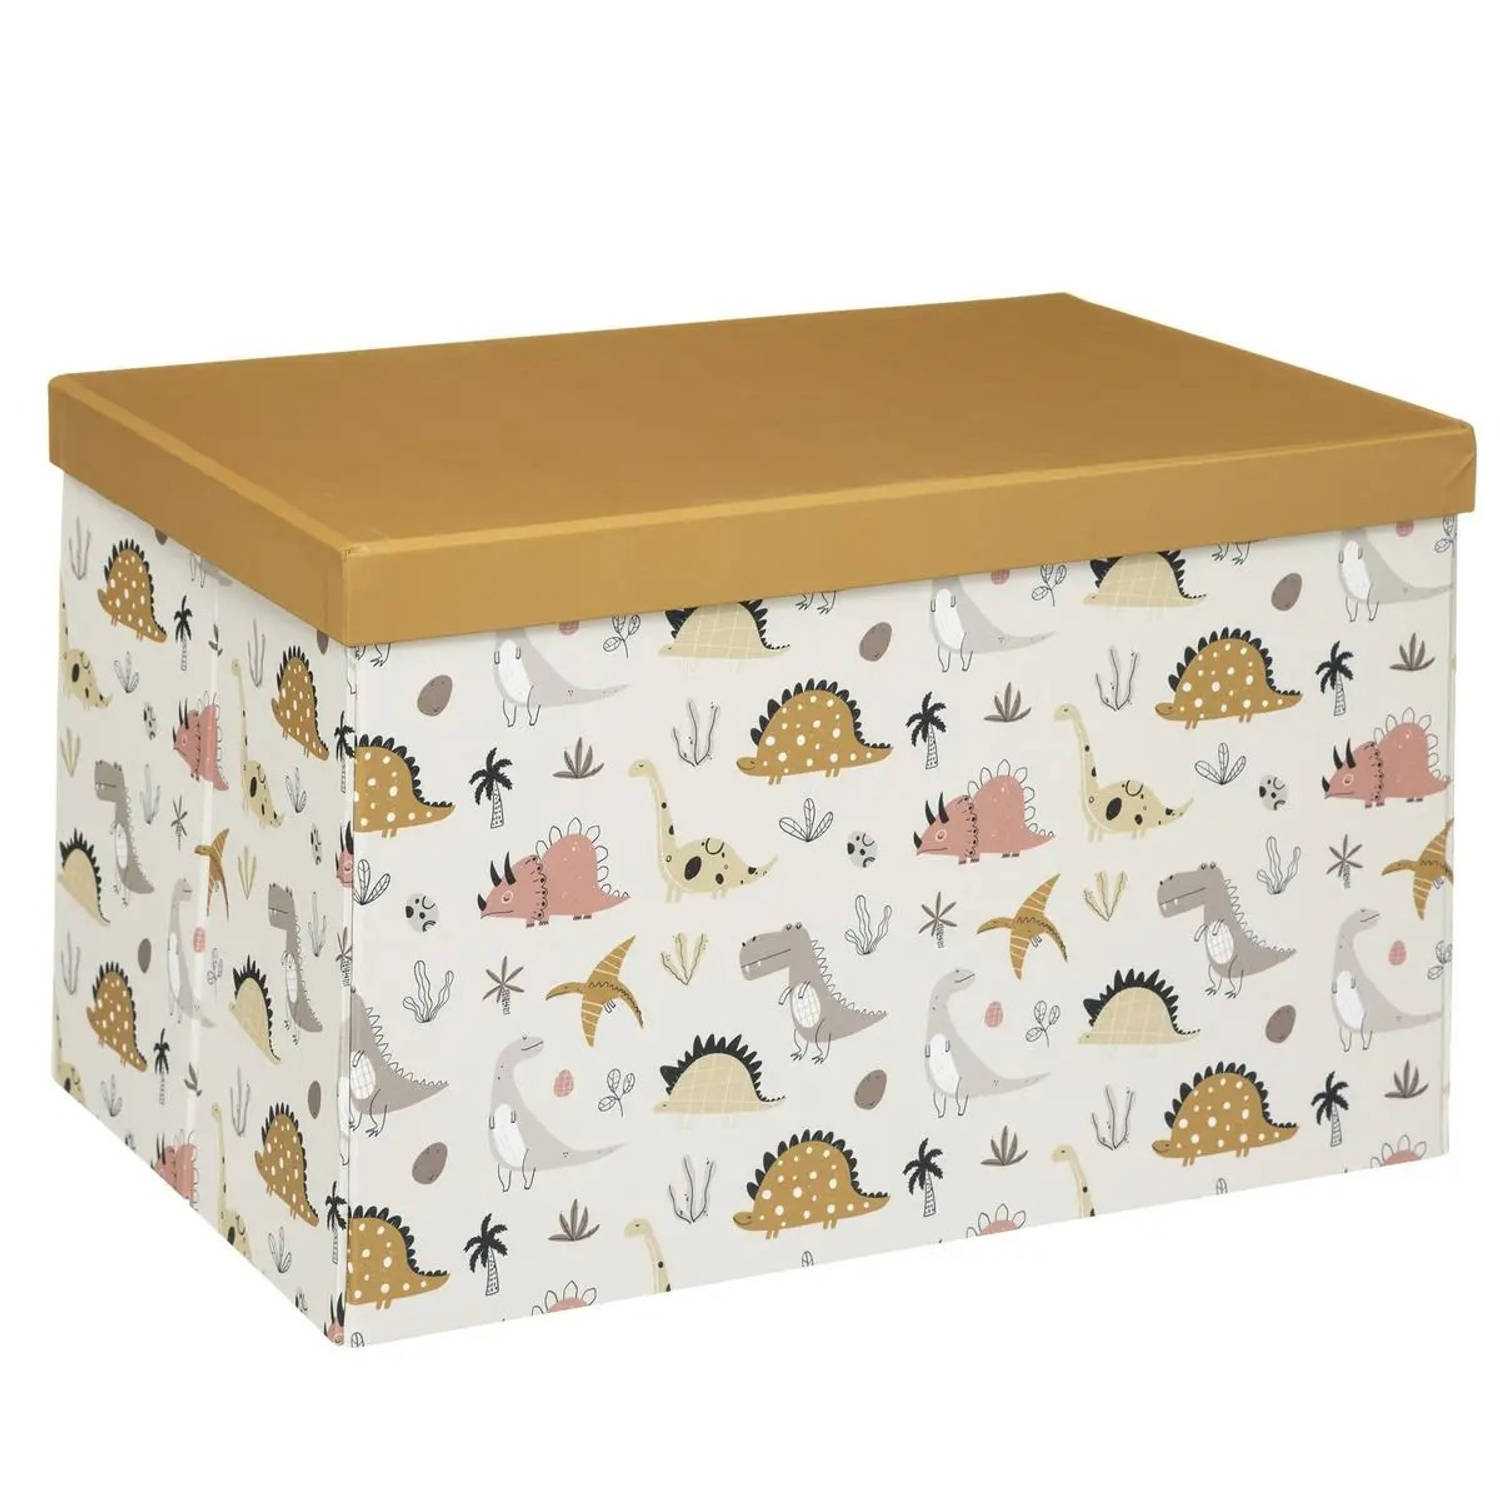 Opbergdoos/opberg box van karton met oker geel dinosaurus print - 38 x 24,5 x 25 cm - Opvouwbare doos met deksel